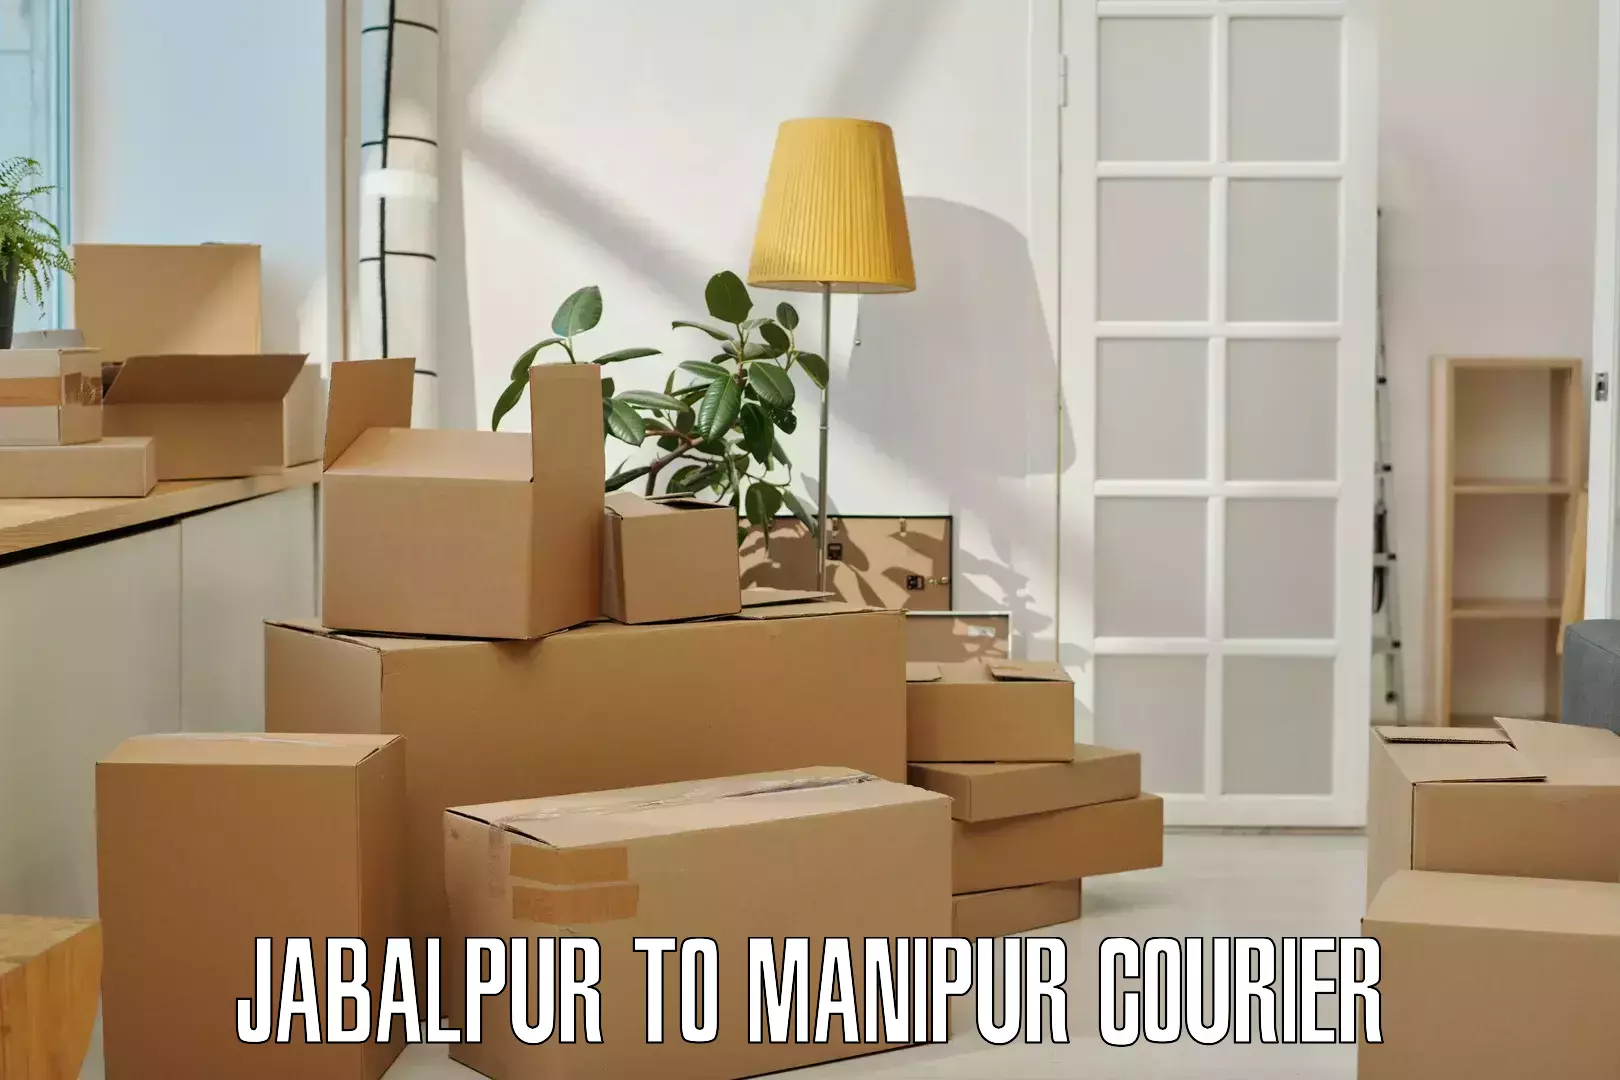 Global parcel delivery Jabalpur to Chandel